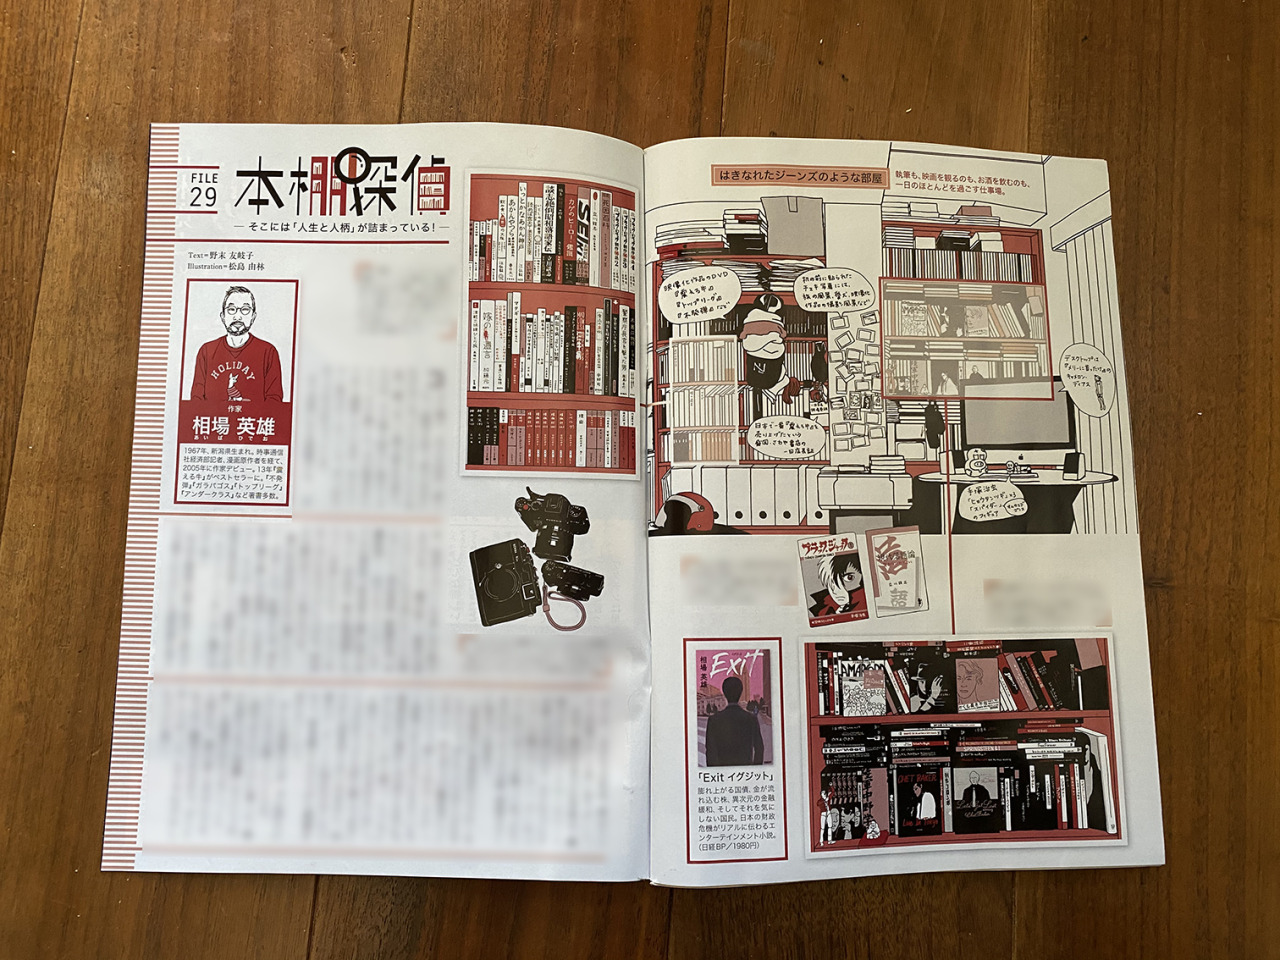 Yuki Matsushima Illustrations イラストを担当しているサンデー毎日の本棚探偵file29は 震える牛 不発弾 などの社会派エンタメで